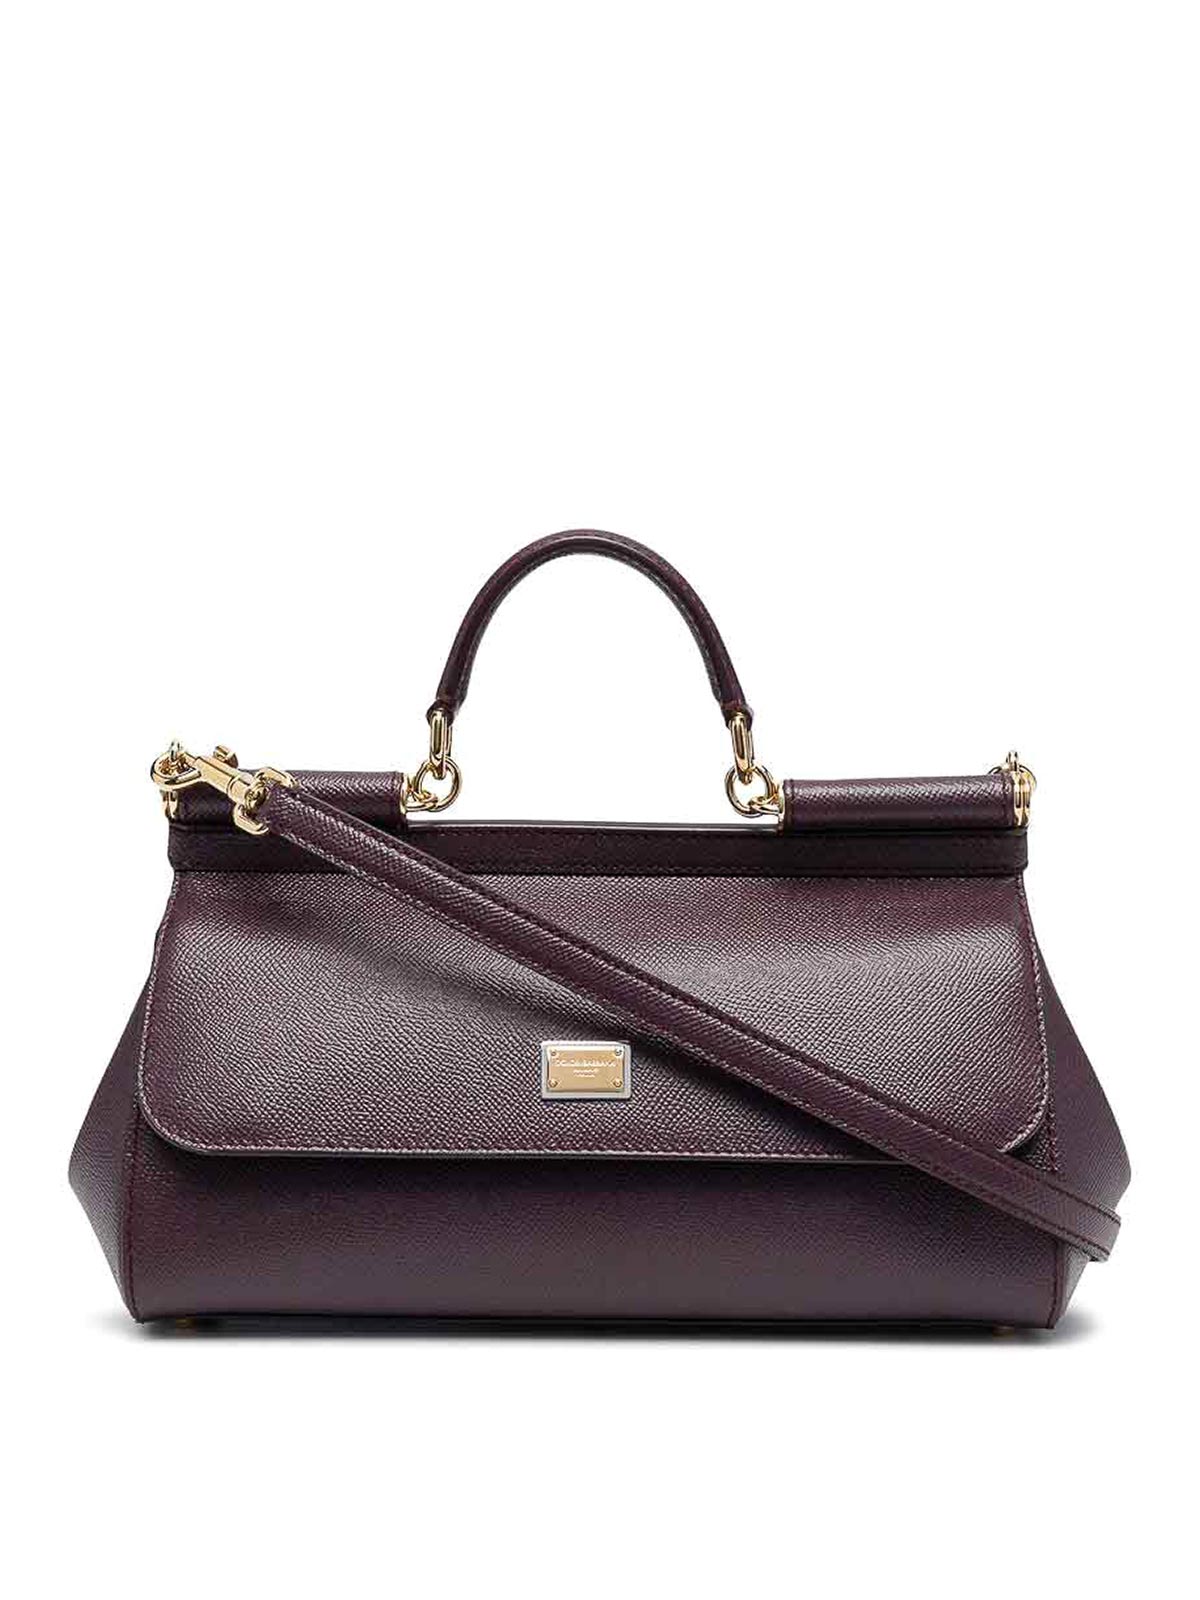 Dolce & Gabbana Sicily Medium Handbag In Púrpura